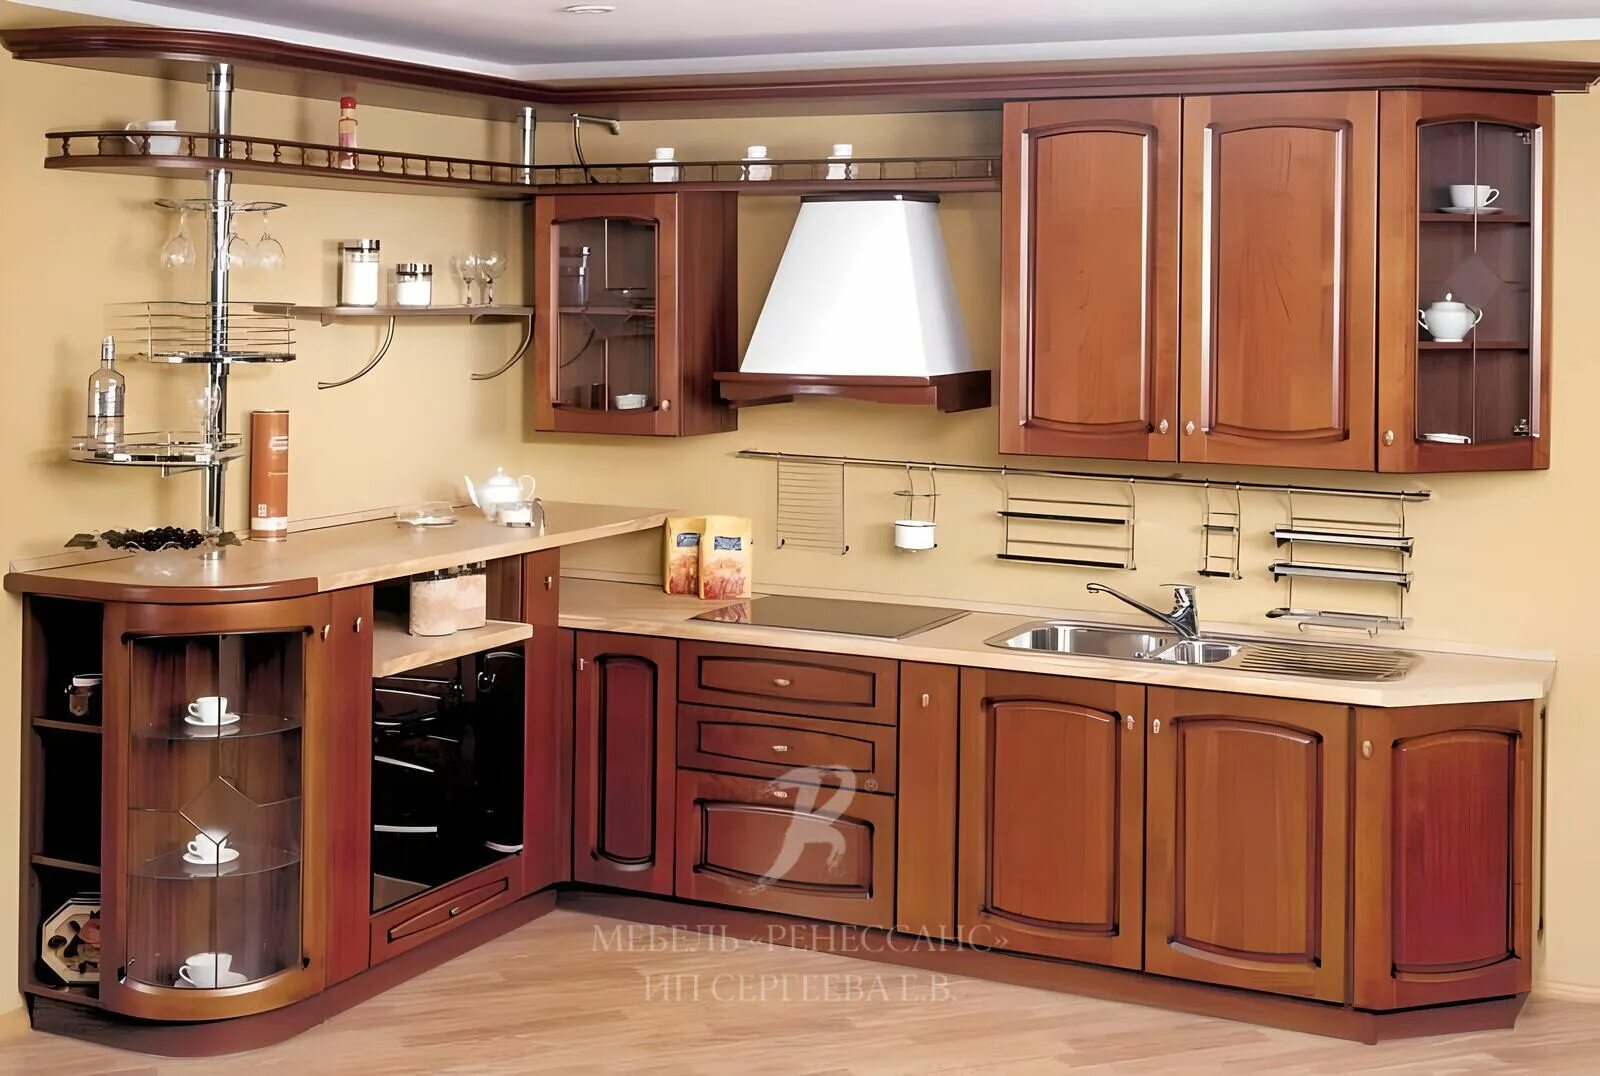 Куплю кухонный образец. Кухонная мебель. Кухонная стенка. Кухонный гарнитур дерево. Кухонные гарнитуры угловые.